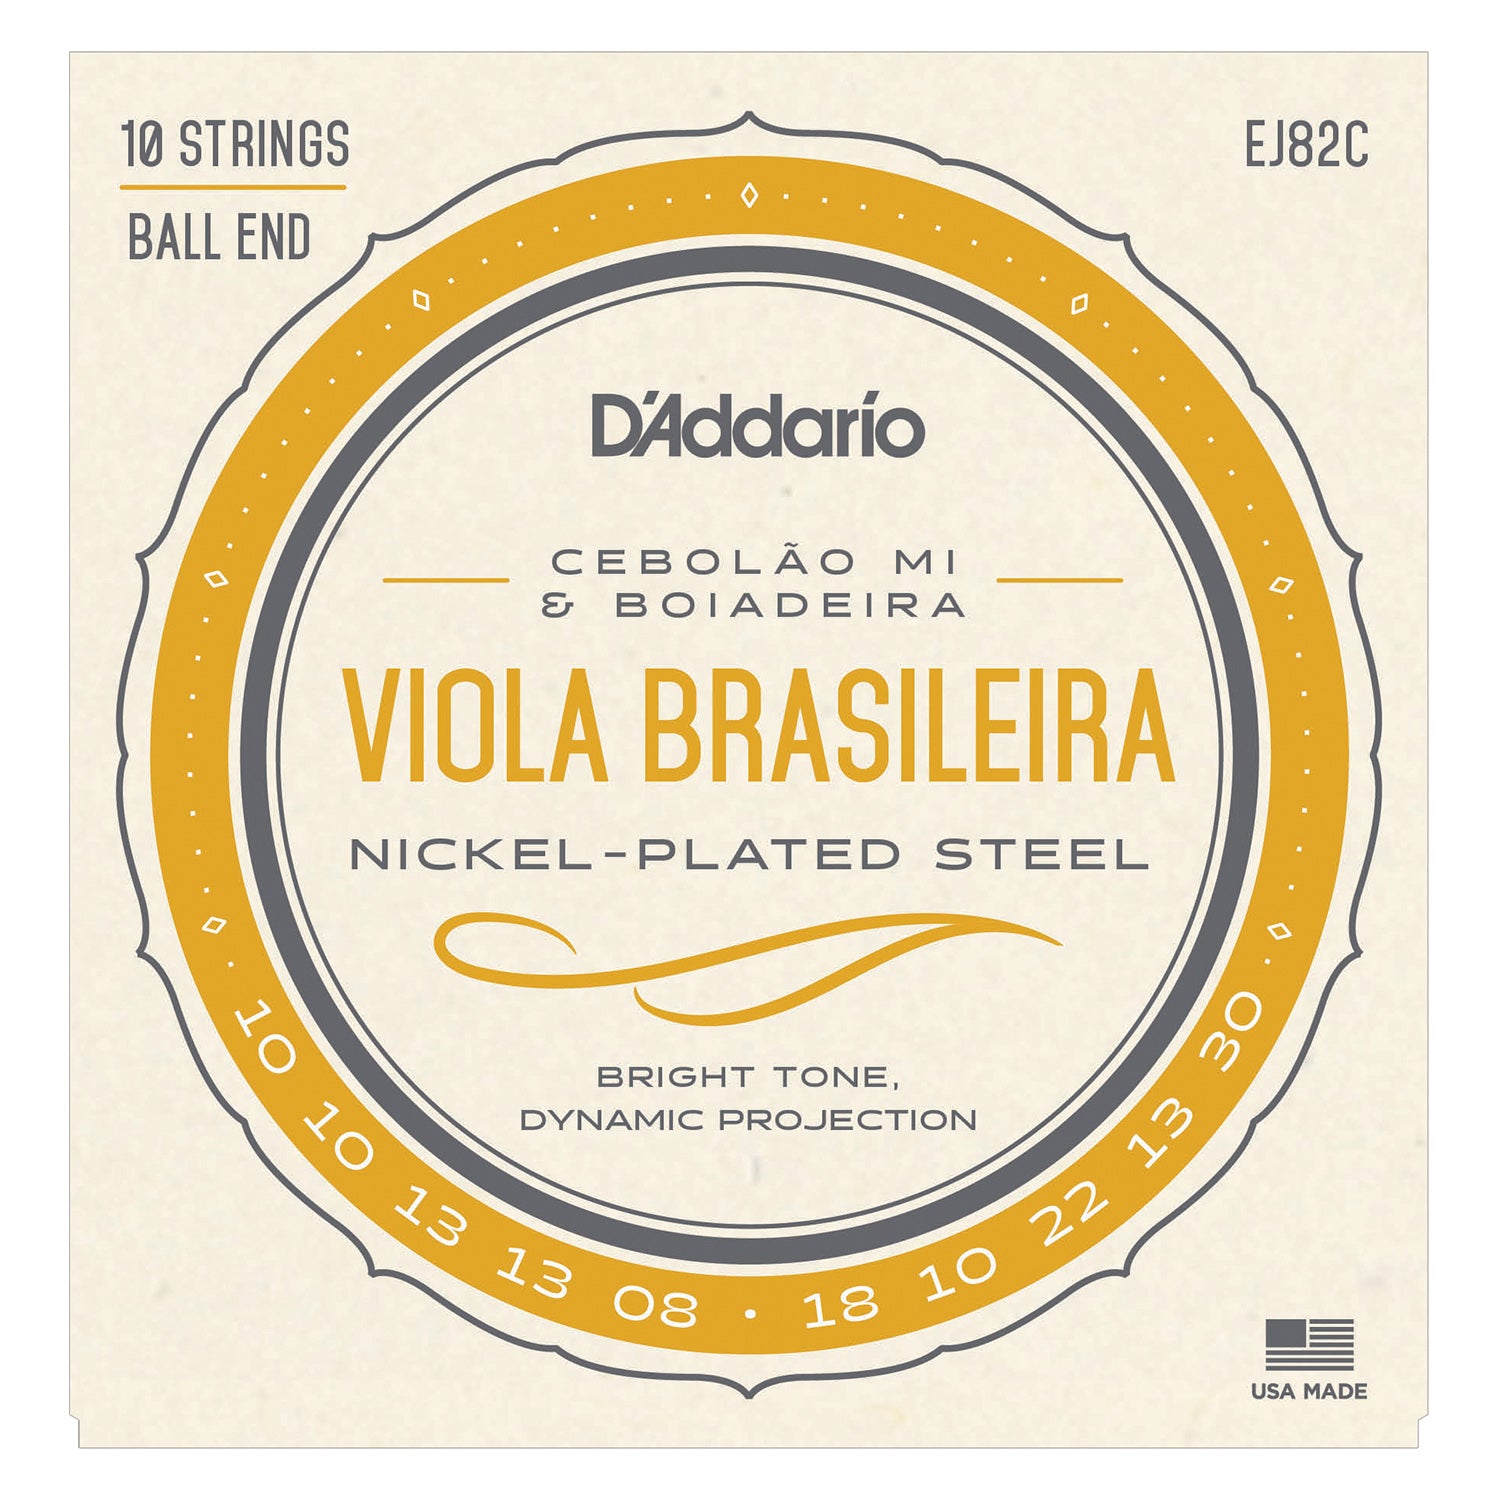 D'Addario EJ82C Viola Brasileira Set, Cebolao Mi and Boiadeira